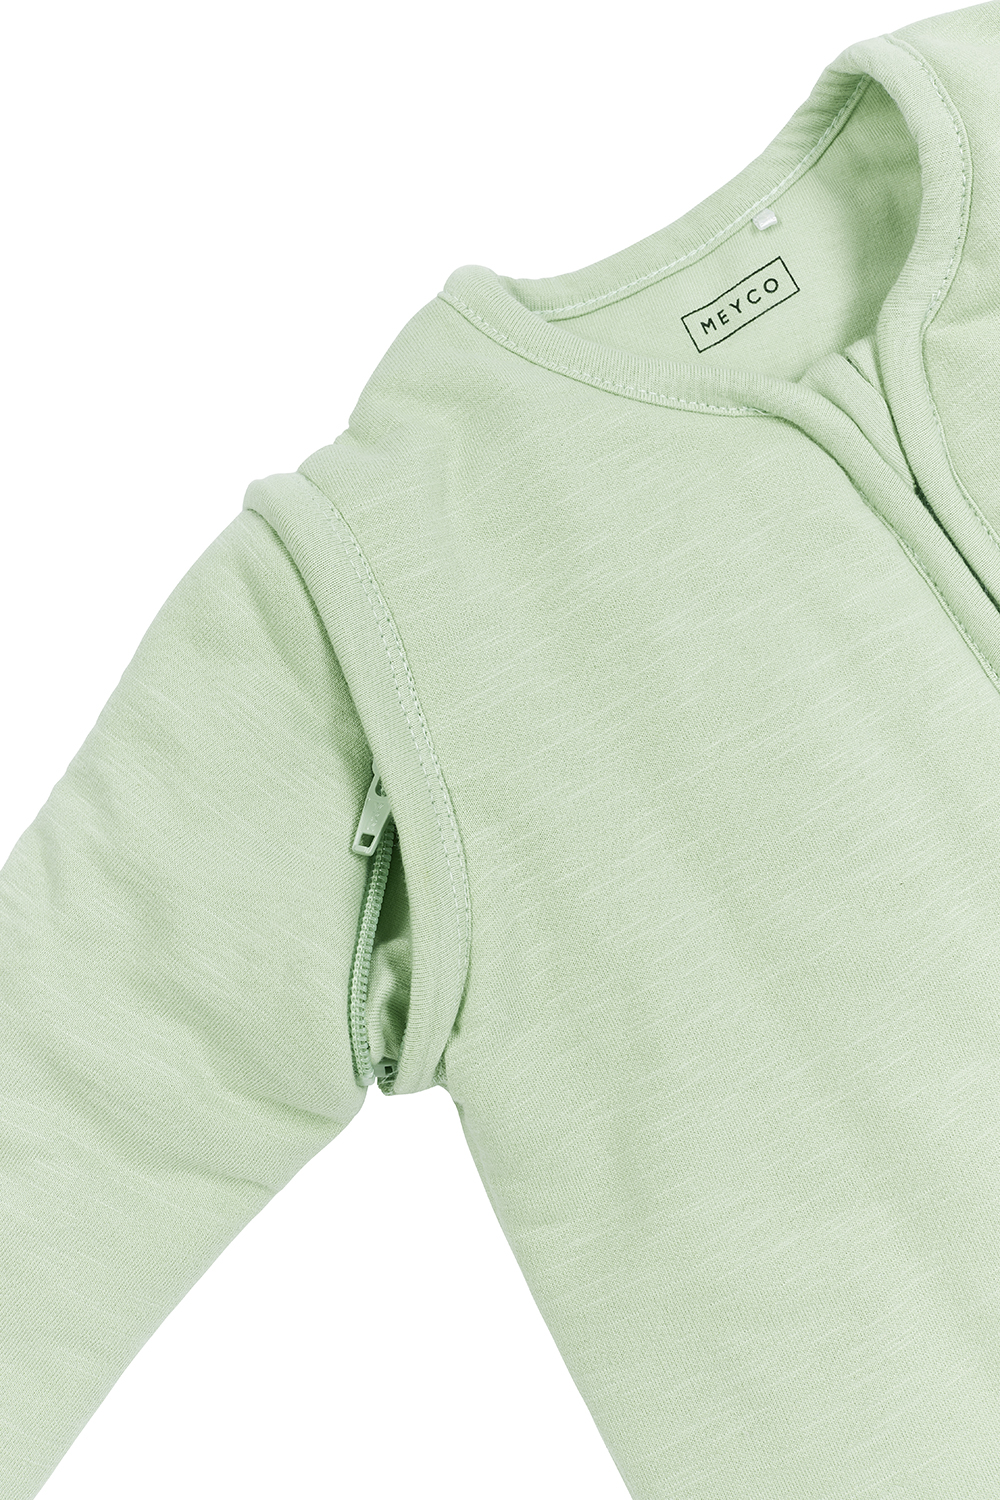 Babyschlafsack mit abnehmbaren Ärmeln Slub - soft green - 70cm